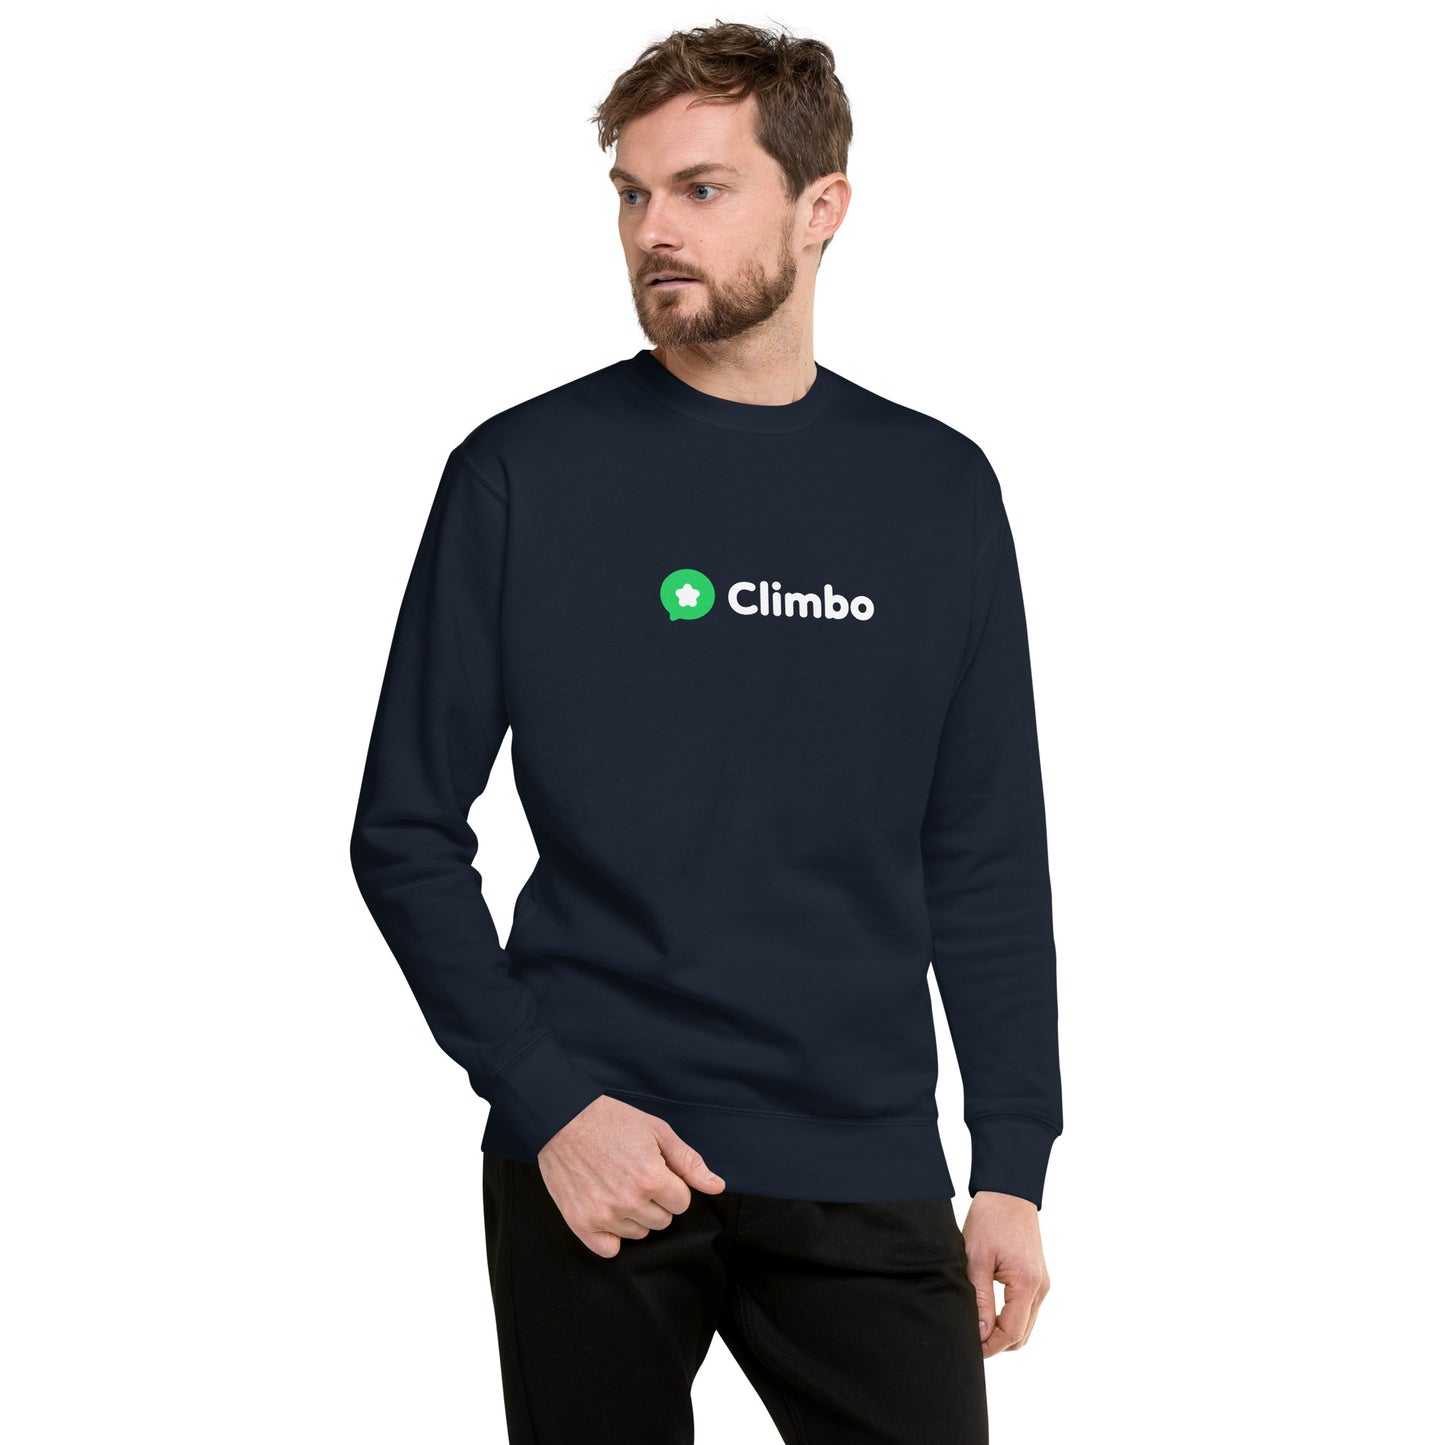 Climbo Sweat - Unisex Premium Sweatshirt